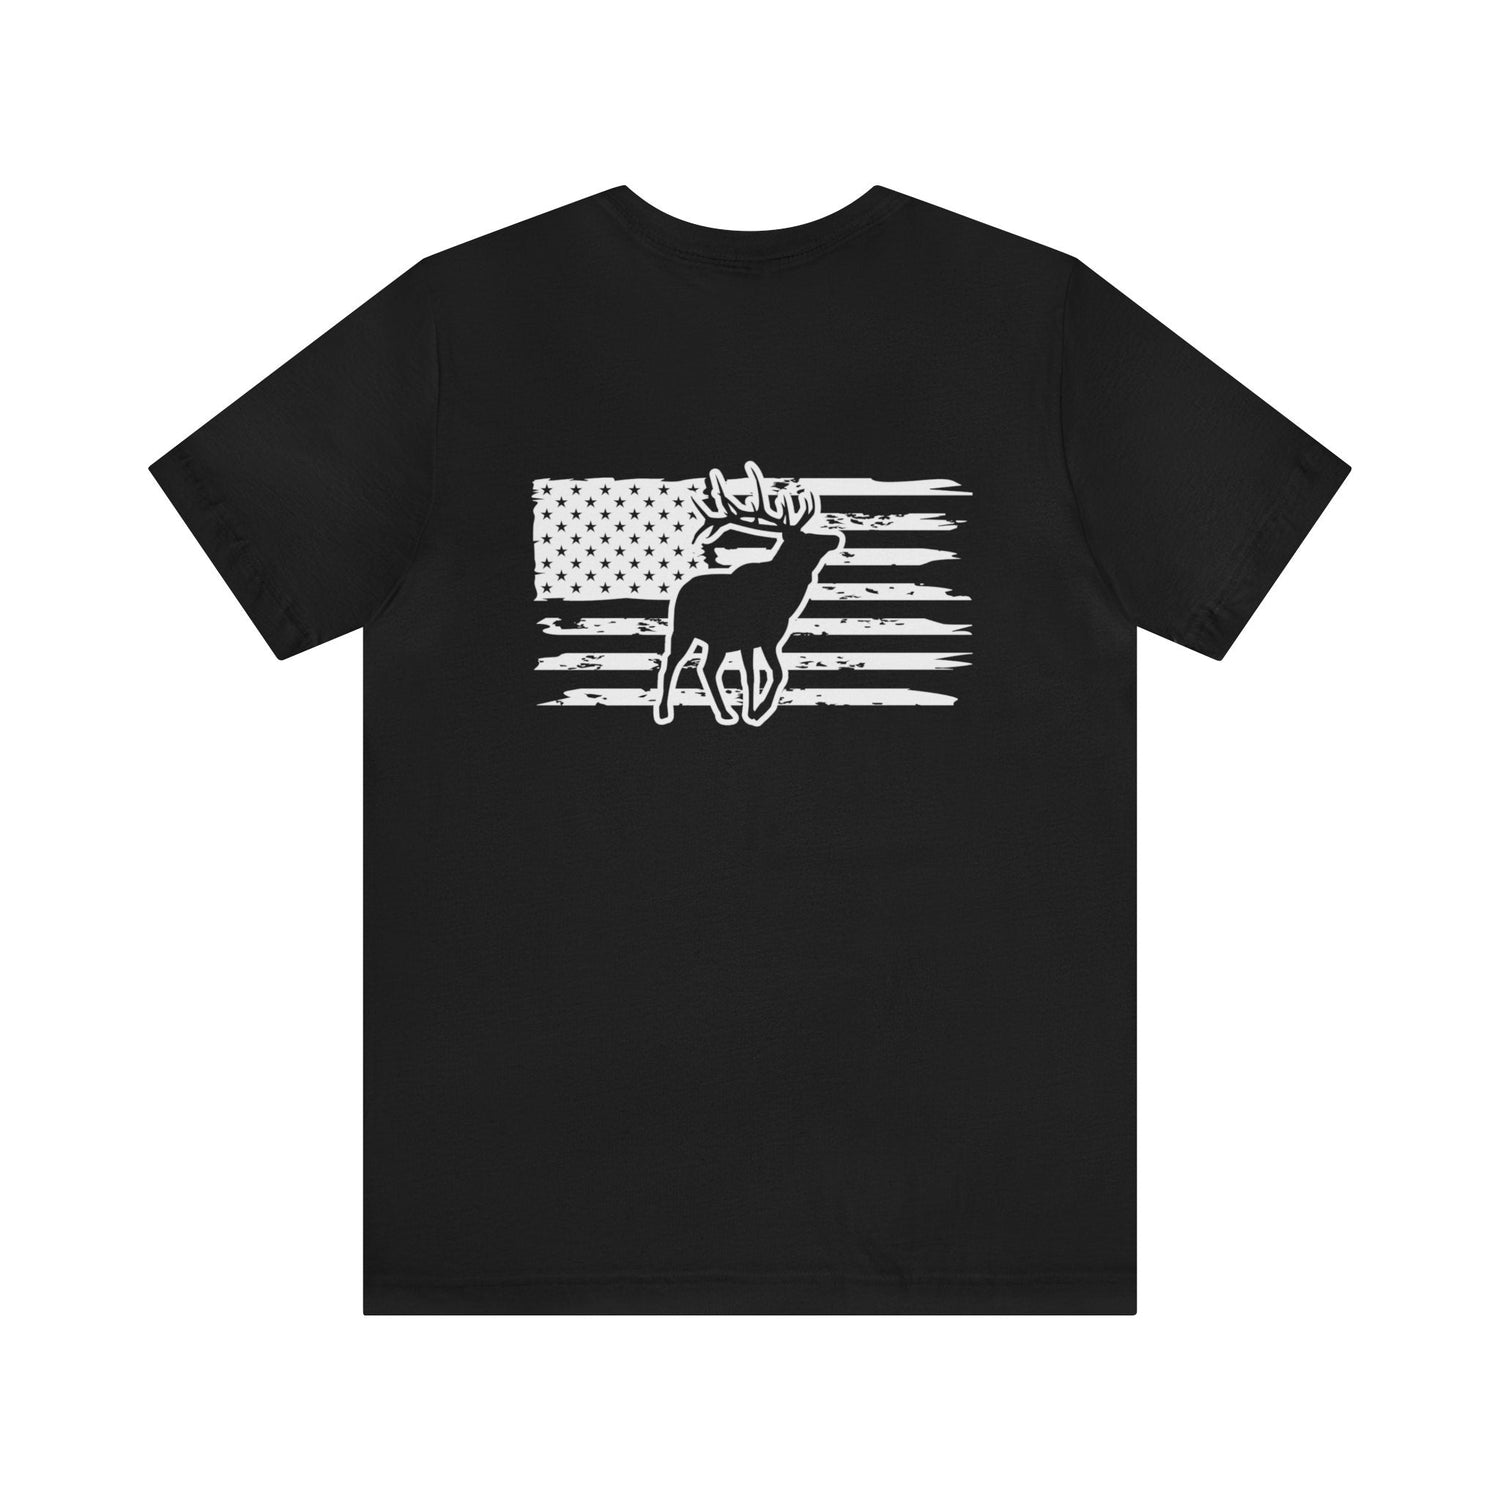 Western elk hunting t-shirt, color black, back design placement